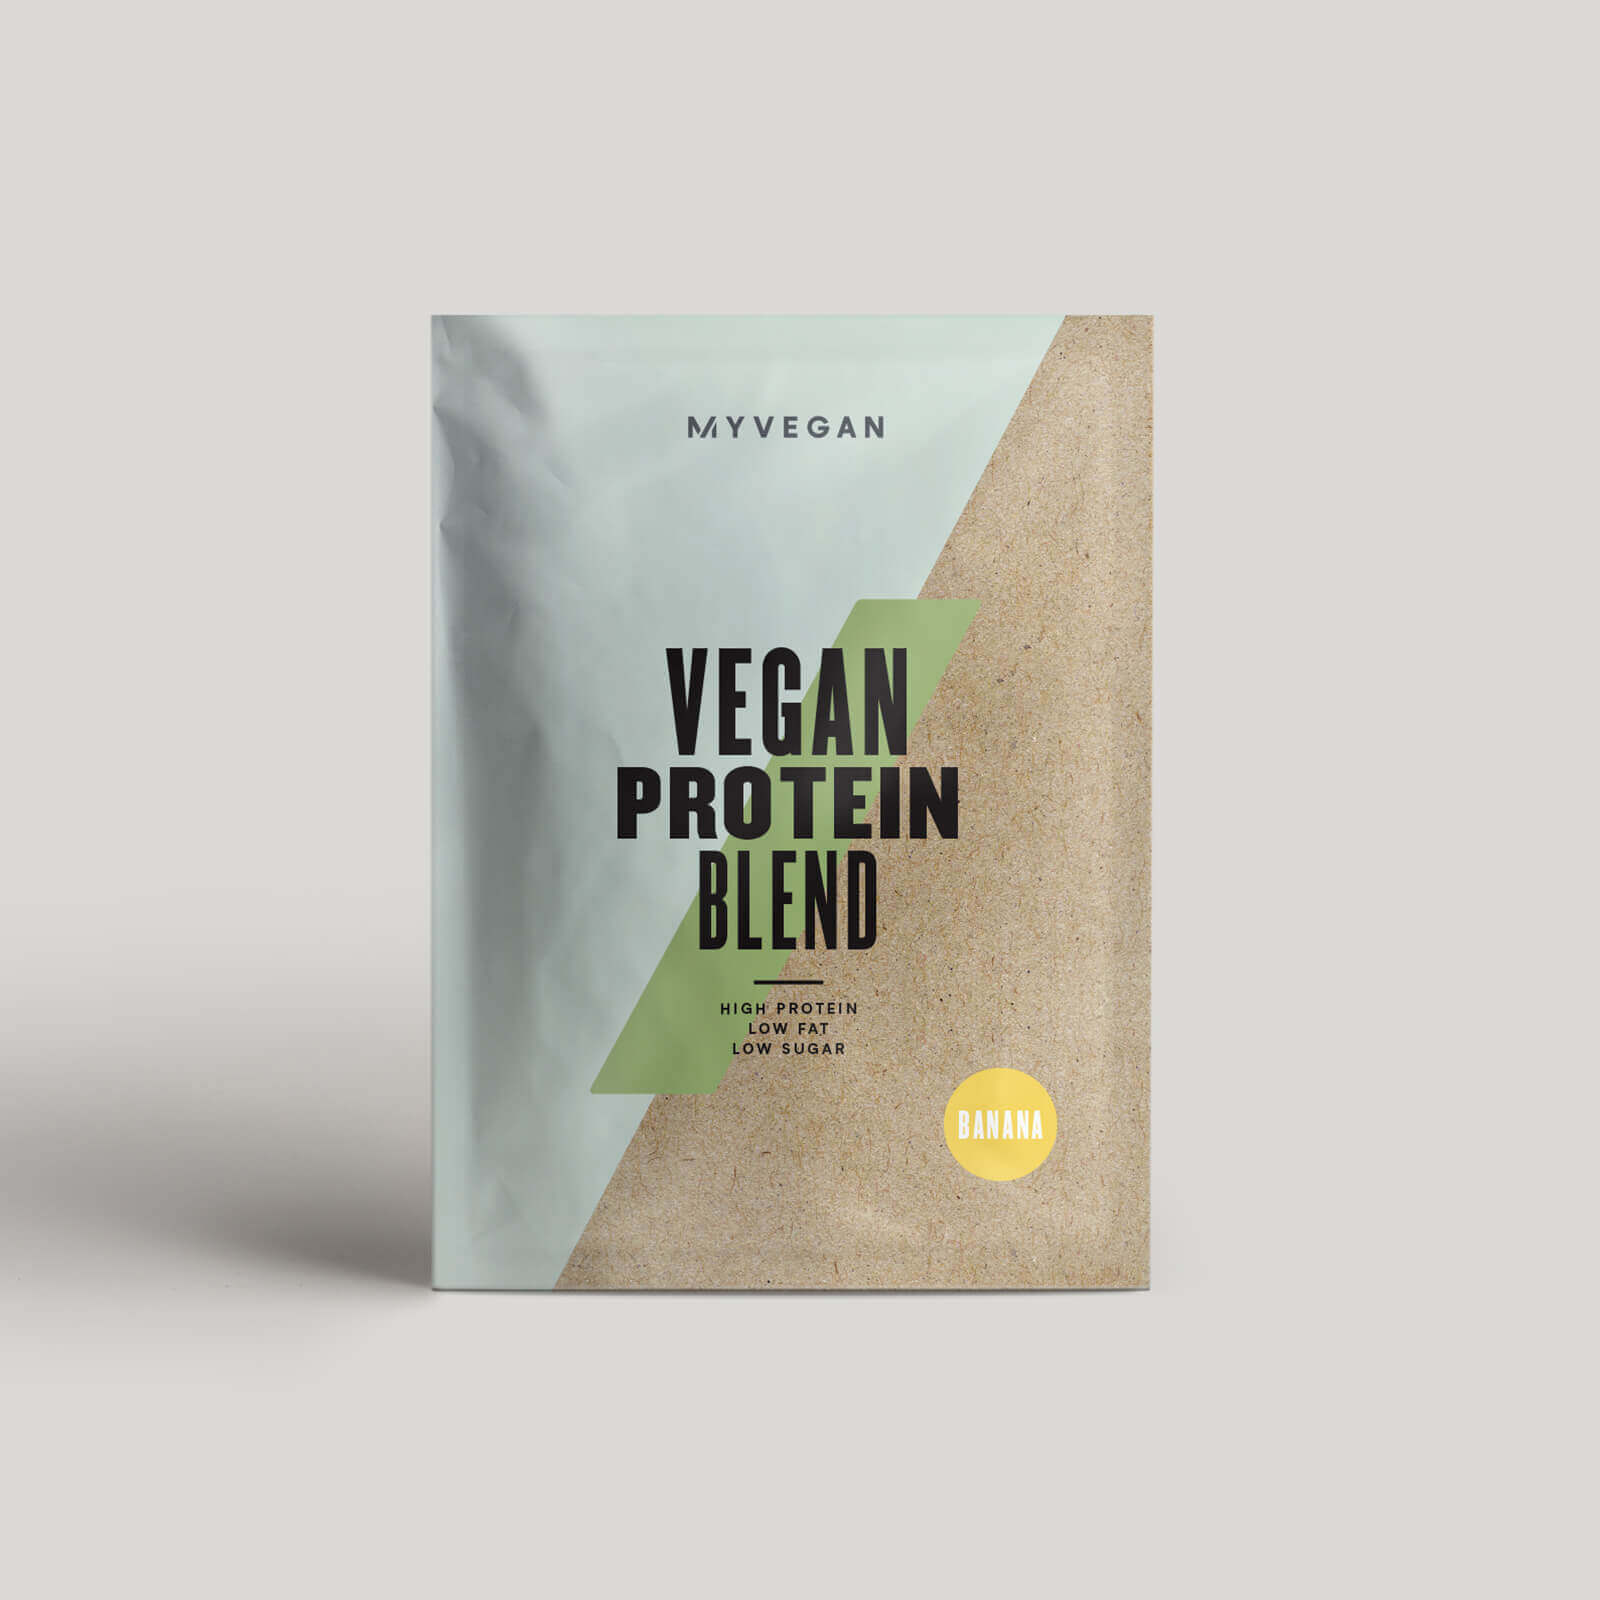 Myvegan Vegan Protein Blend (Sample) - 1servings - Cereal Milk